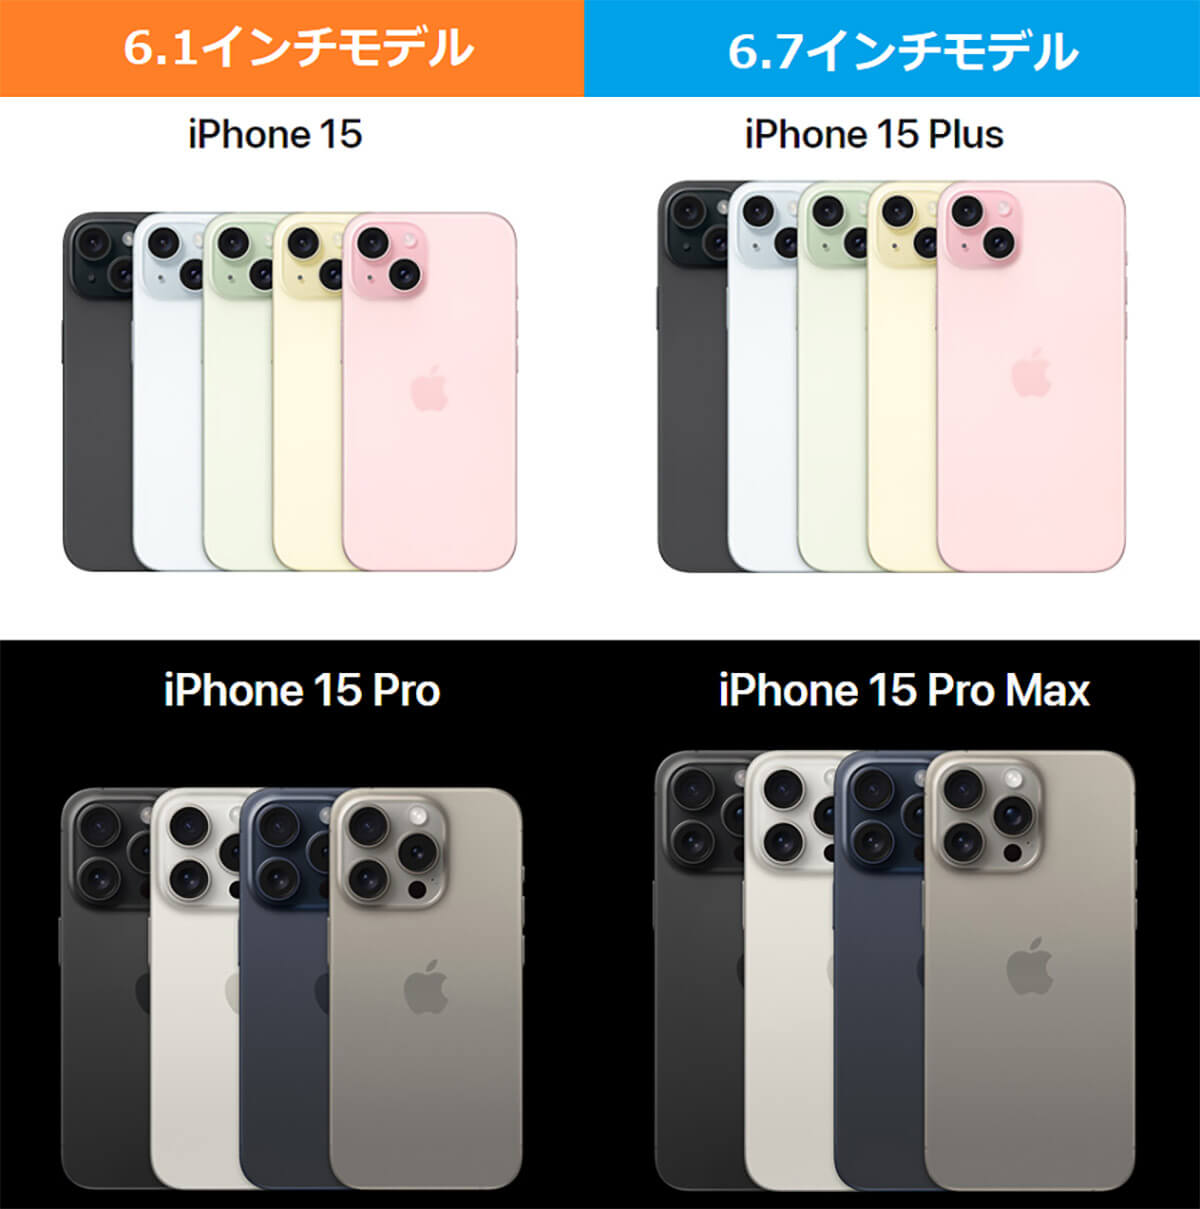 iPhone 15 全機種の違い1